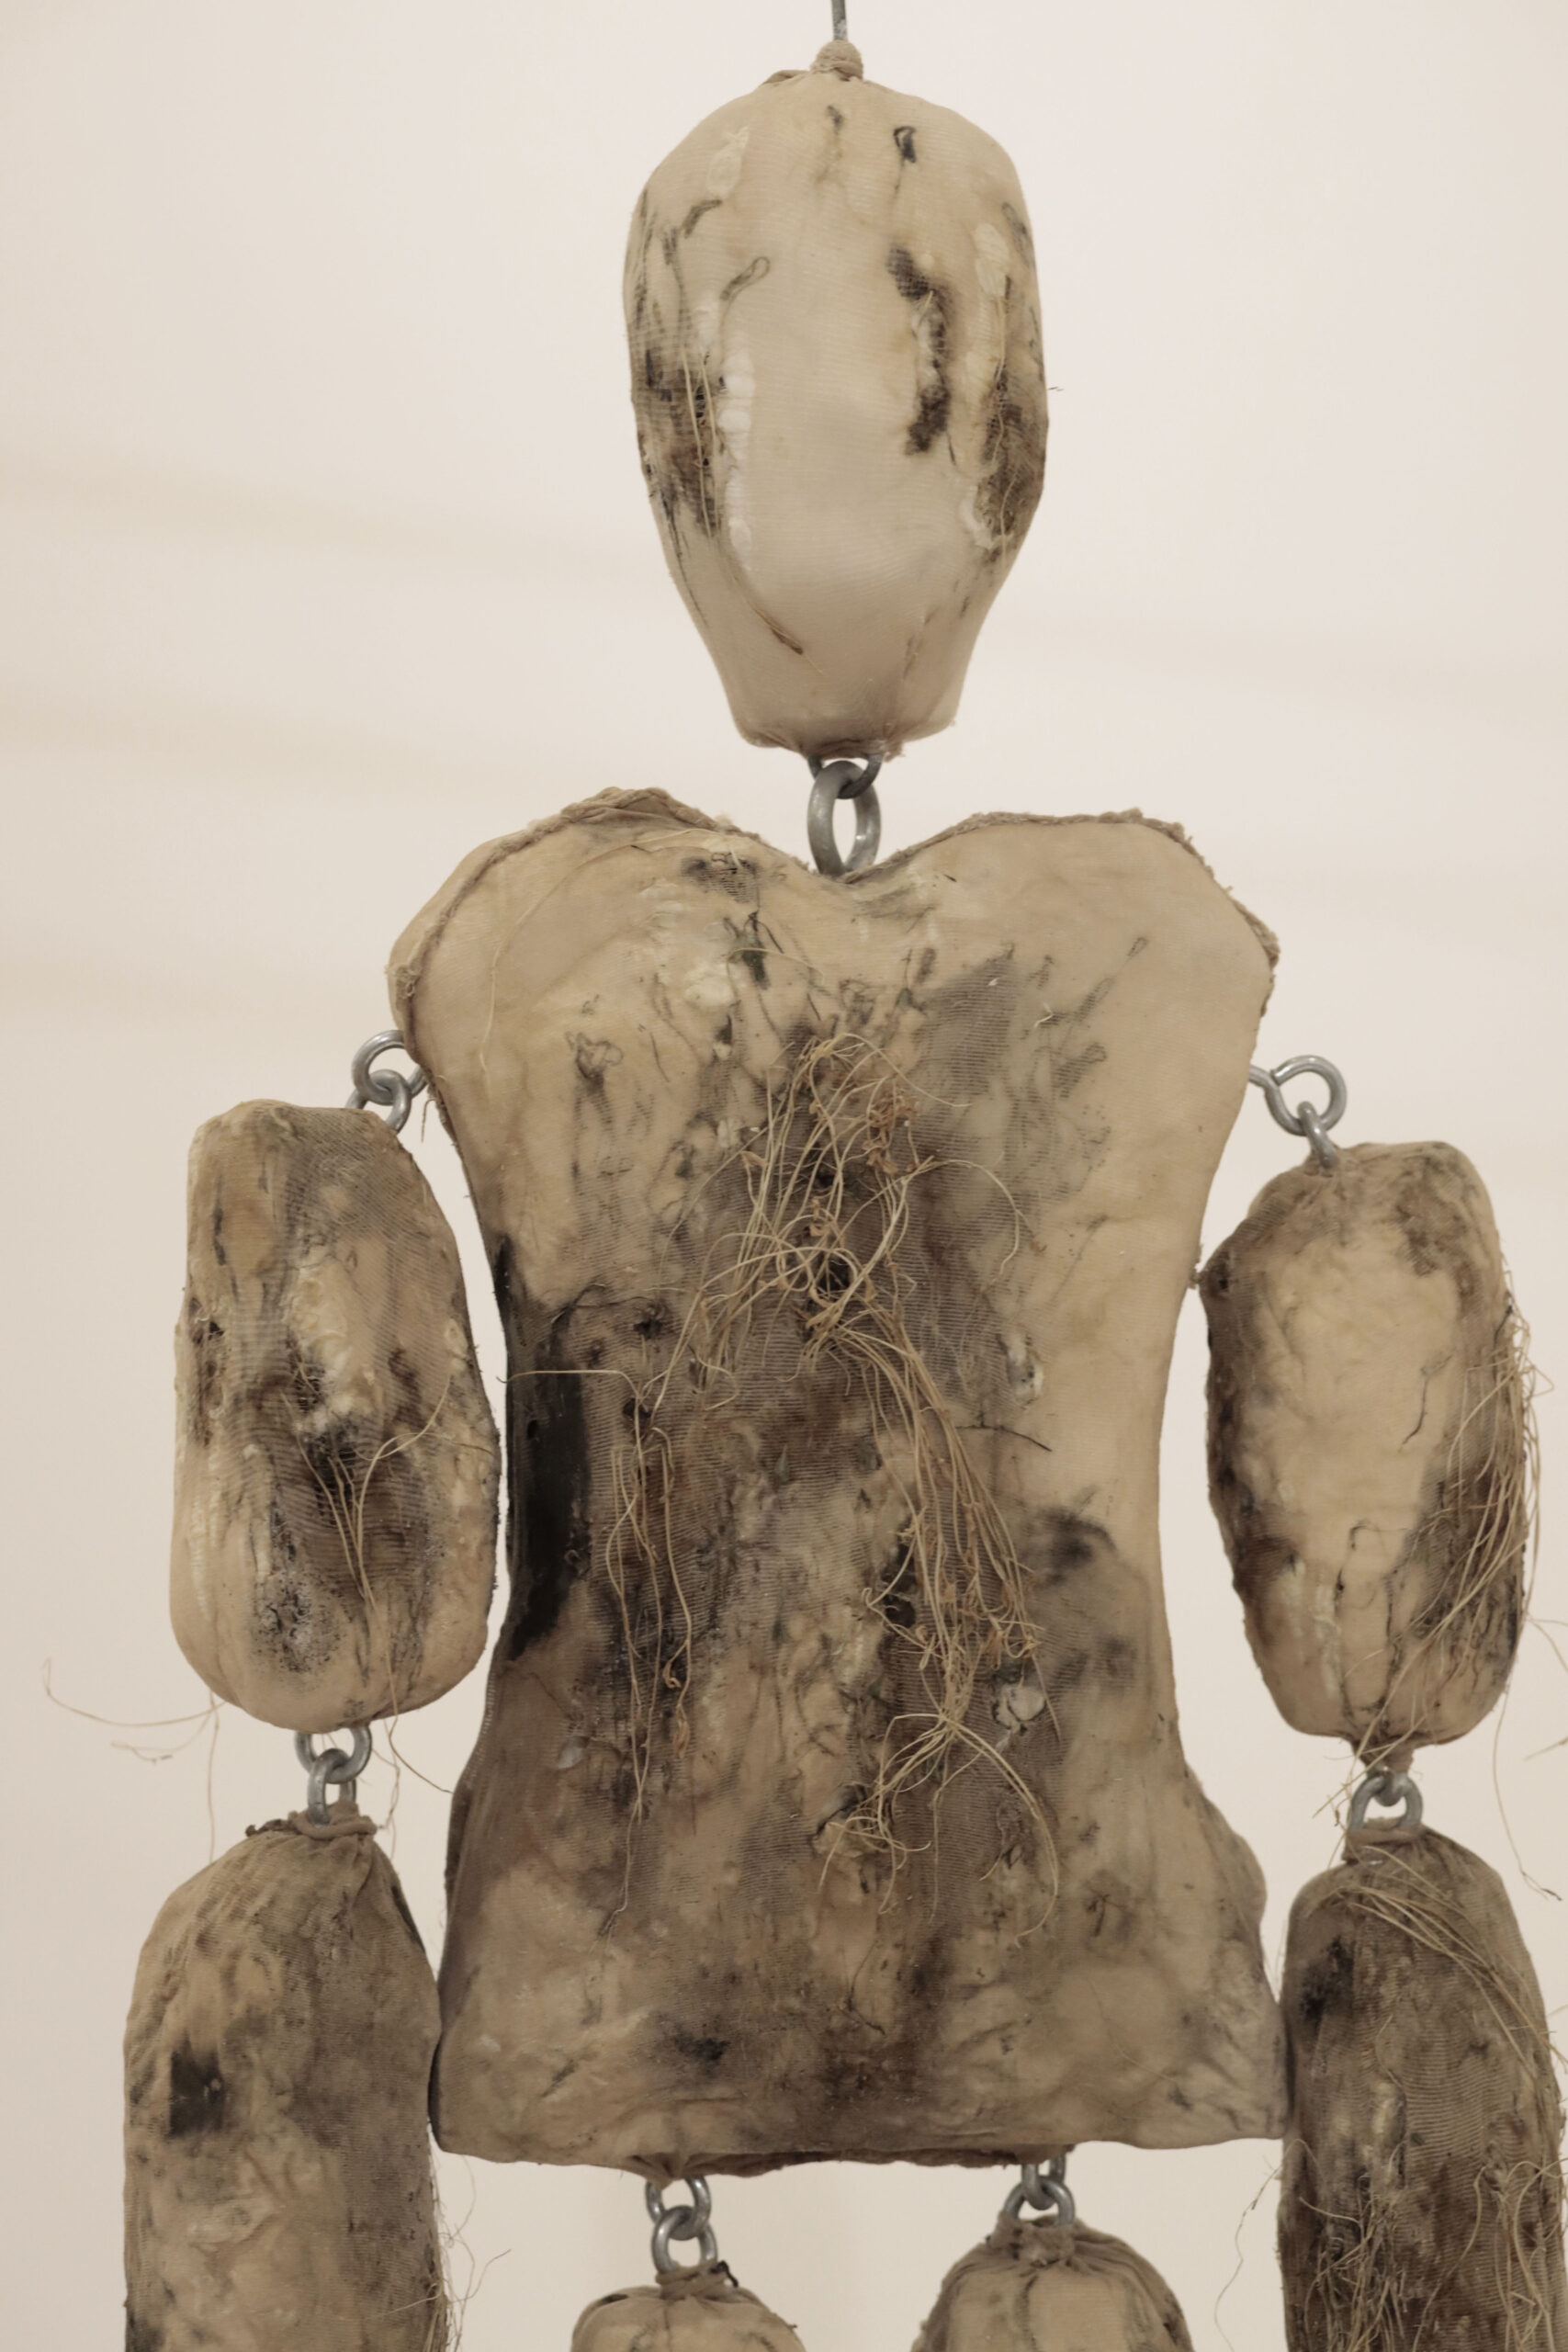 Radici, scultura in legno, malta e acciaio, ricoperta di colant, cotone e semi siculi, 2019 - Noemi Mirata - courtesy of the artist